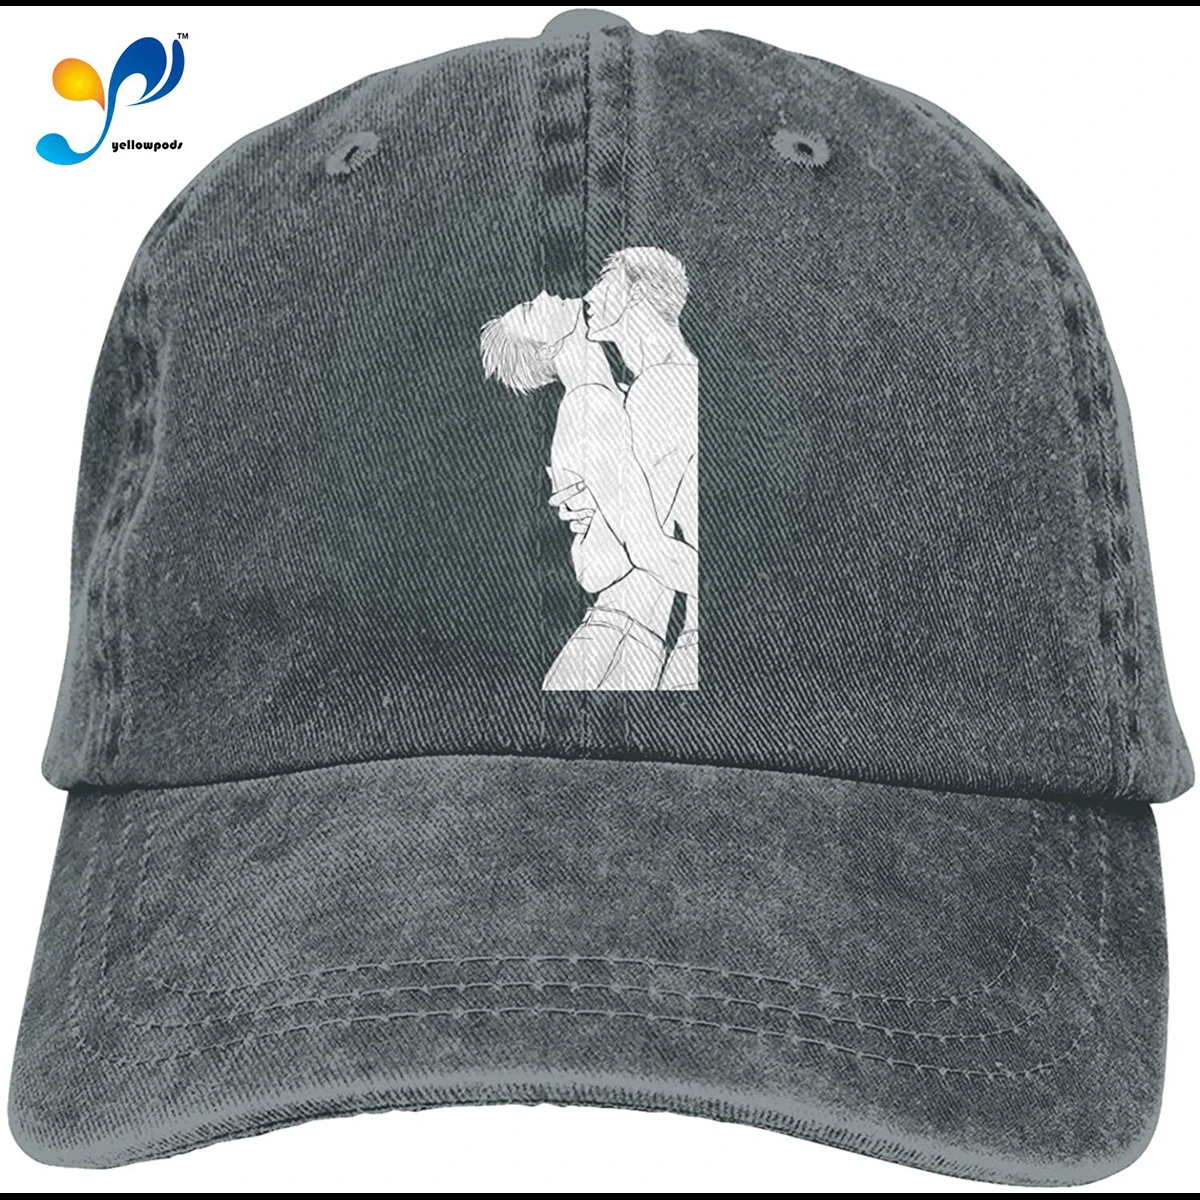 

Twittering-Birds-Never-Fly 4 (2) Baseball Caps Cotton Dad Hat Adjustable Sandwich Hat,Deep Heather Sombrero De Mujer